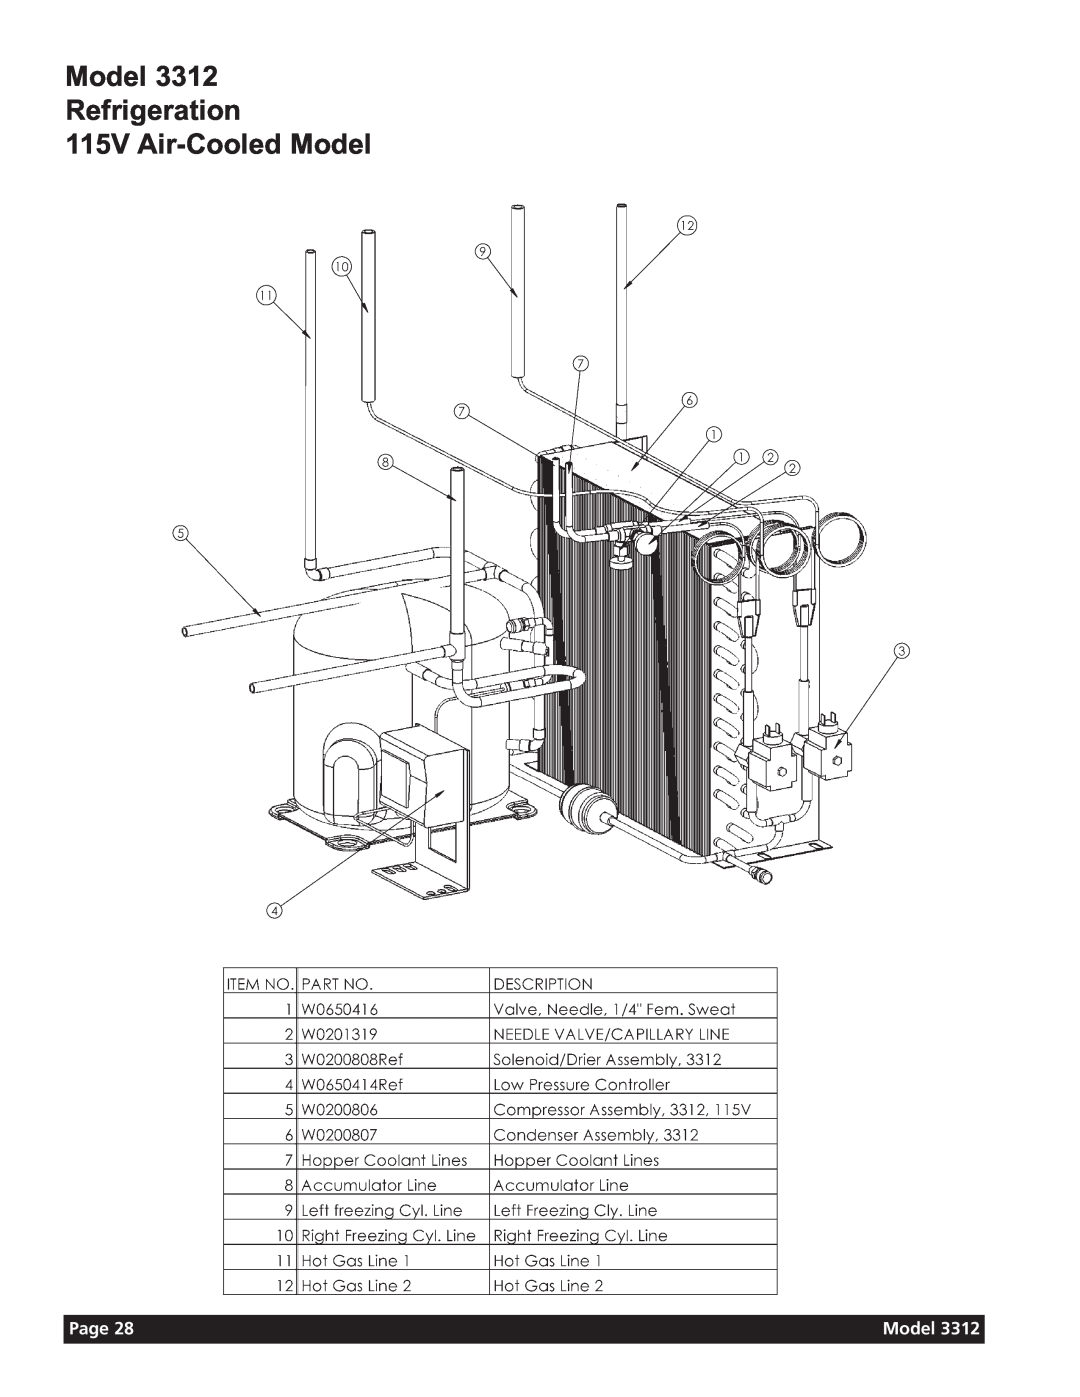 Grindmaster 3311 manual Model Refrigeration 115V Air-CooledModel, Page 